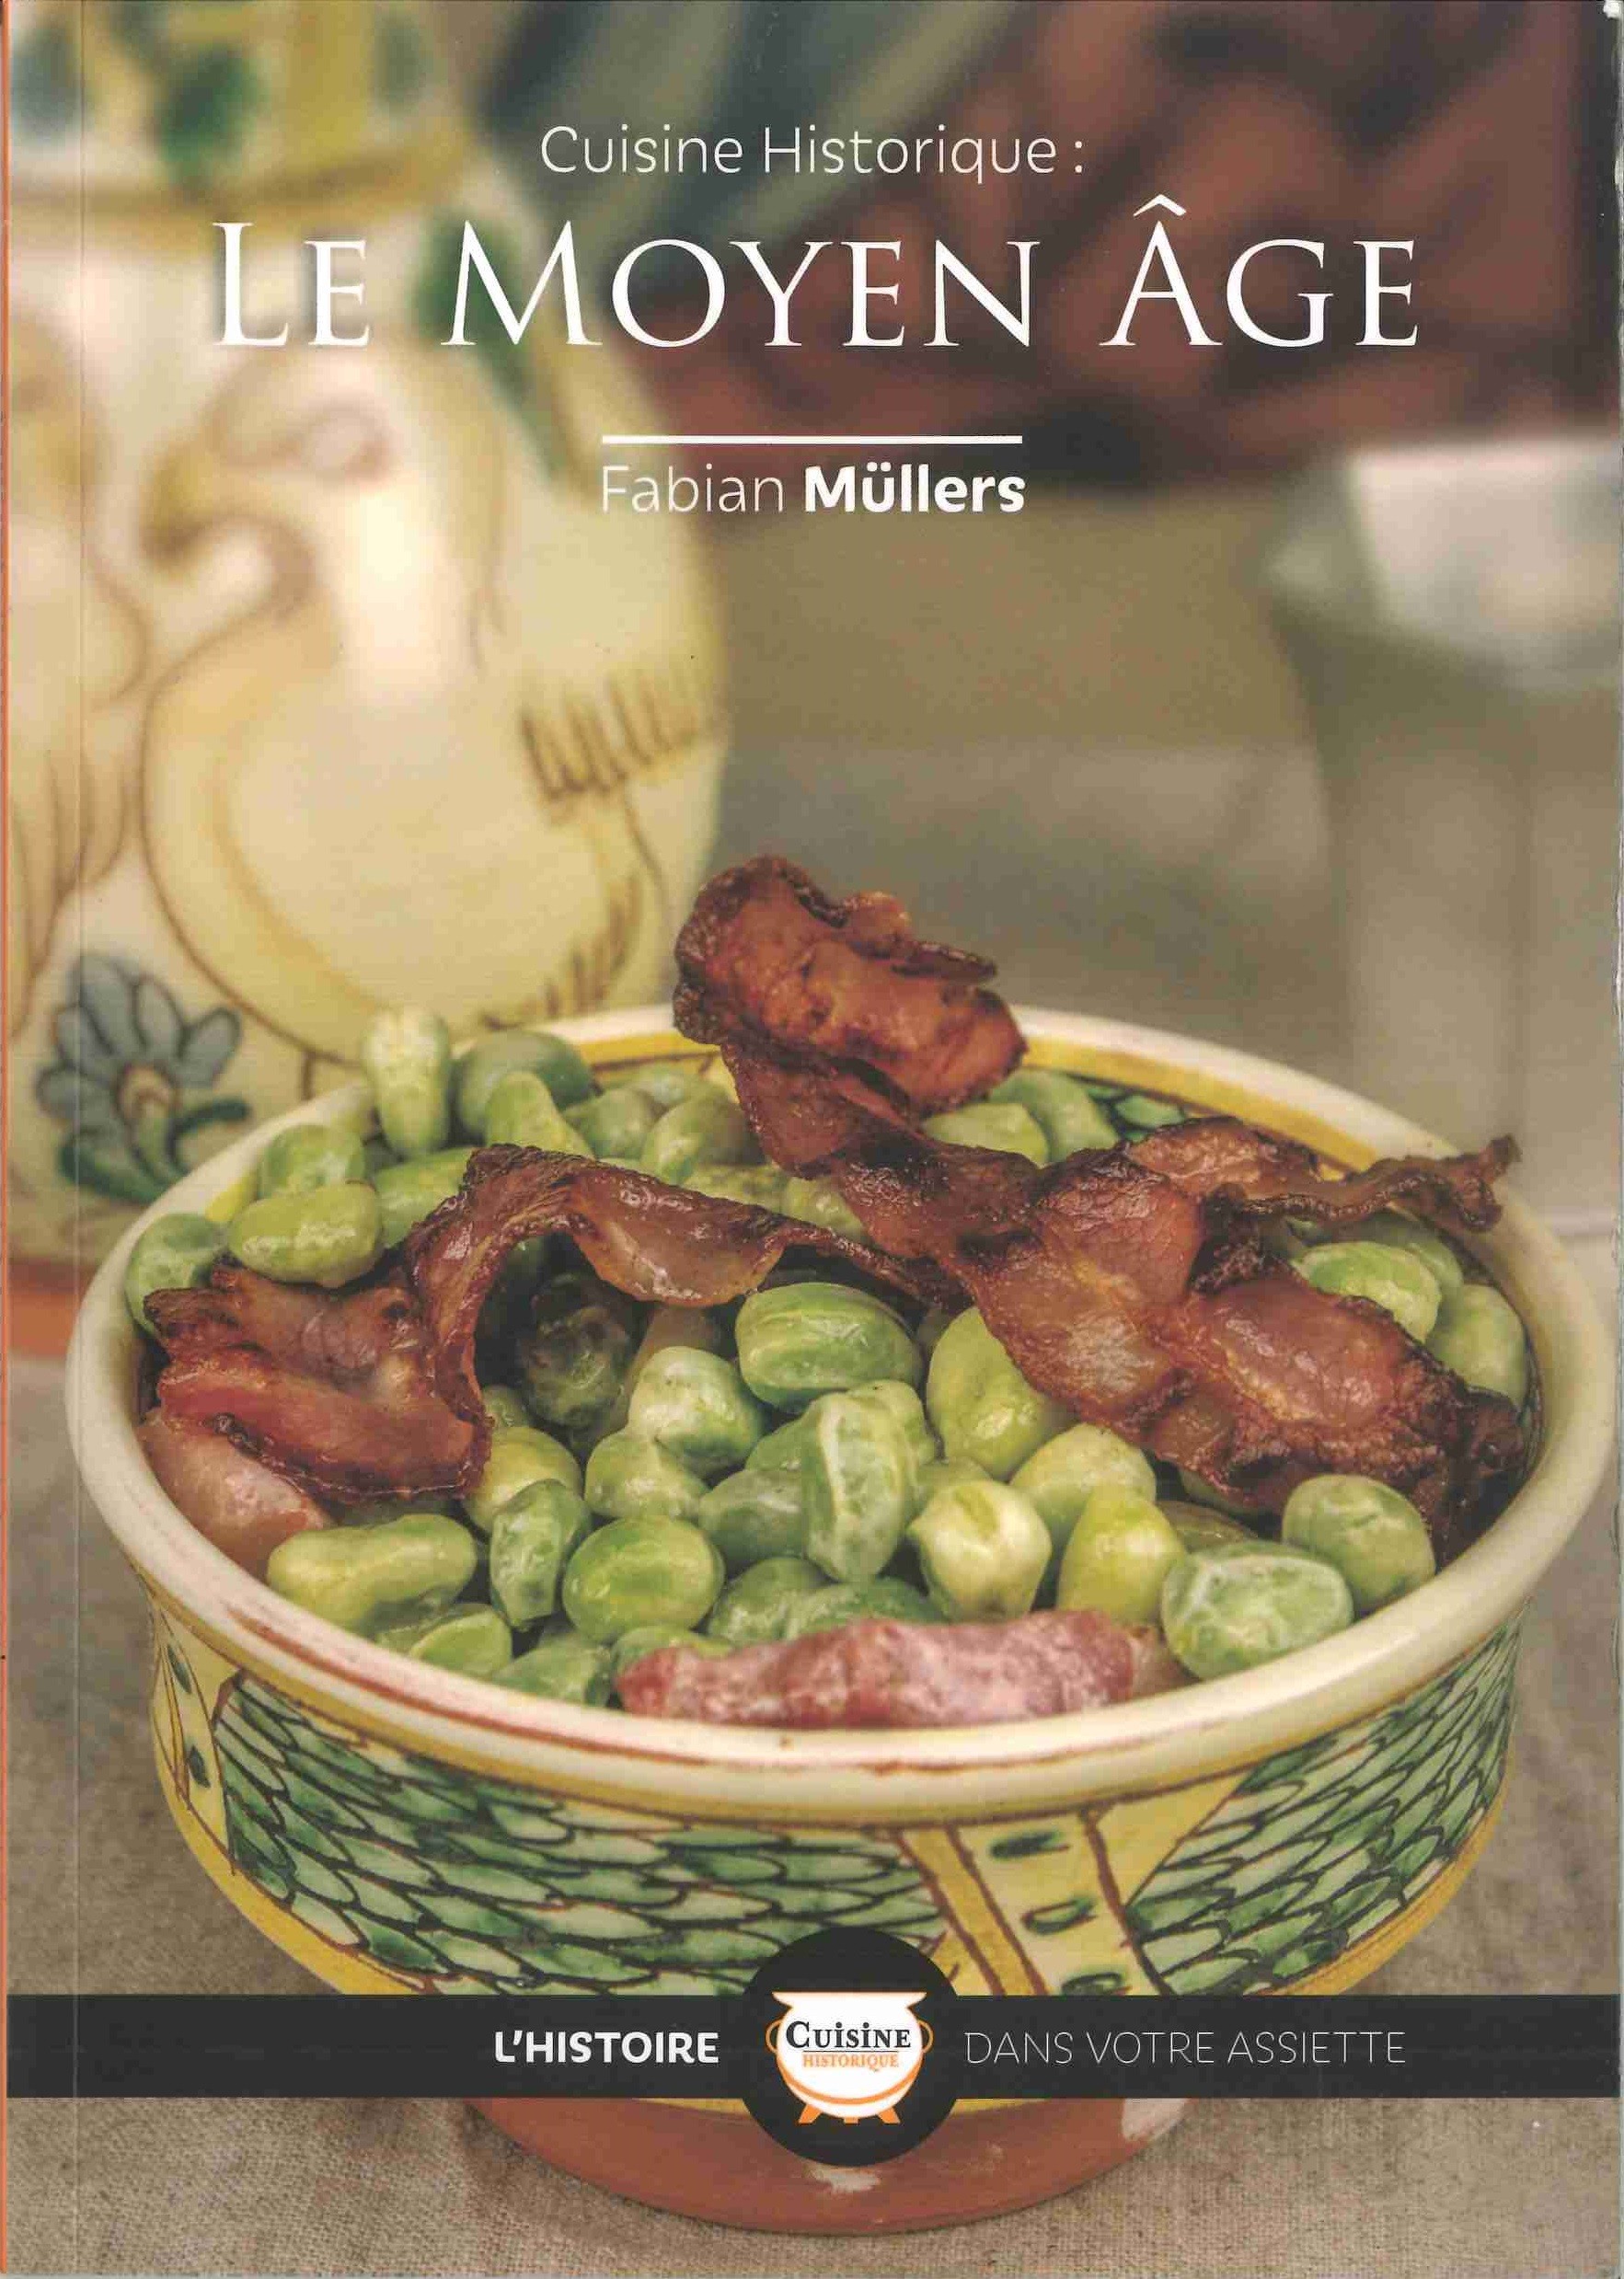 Cuisine Historique : Le Moyen Âge